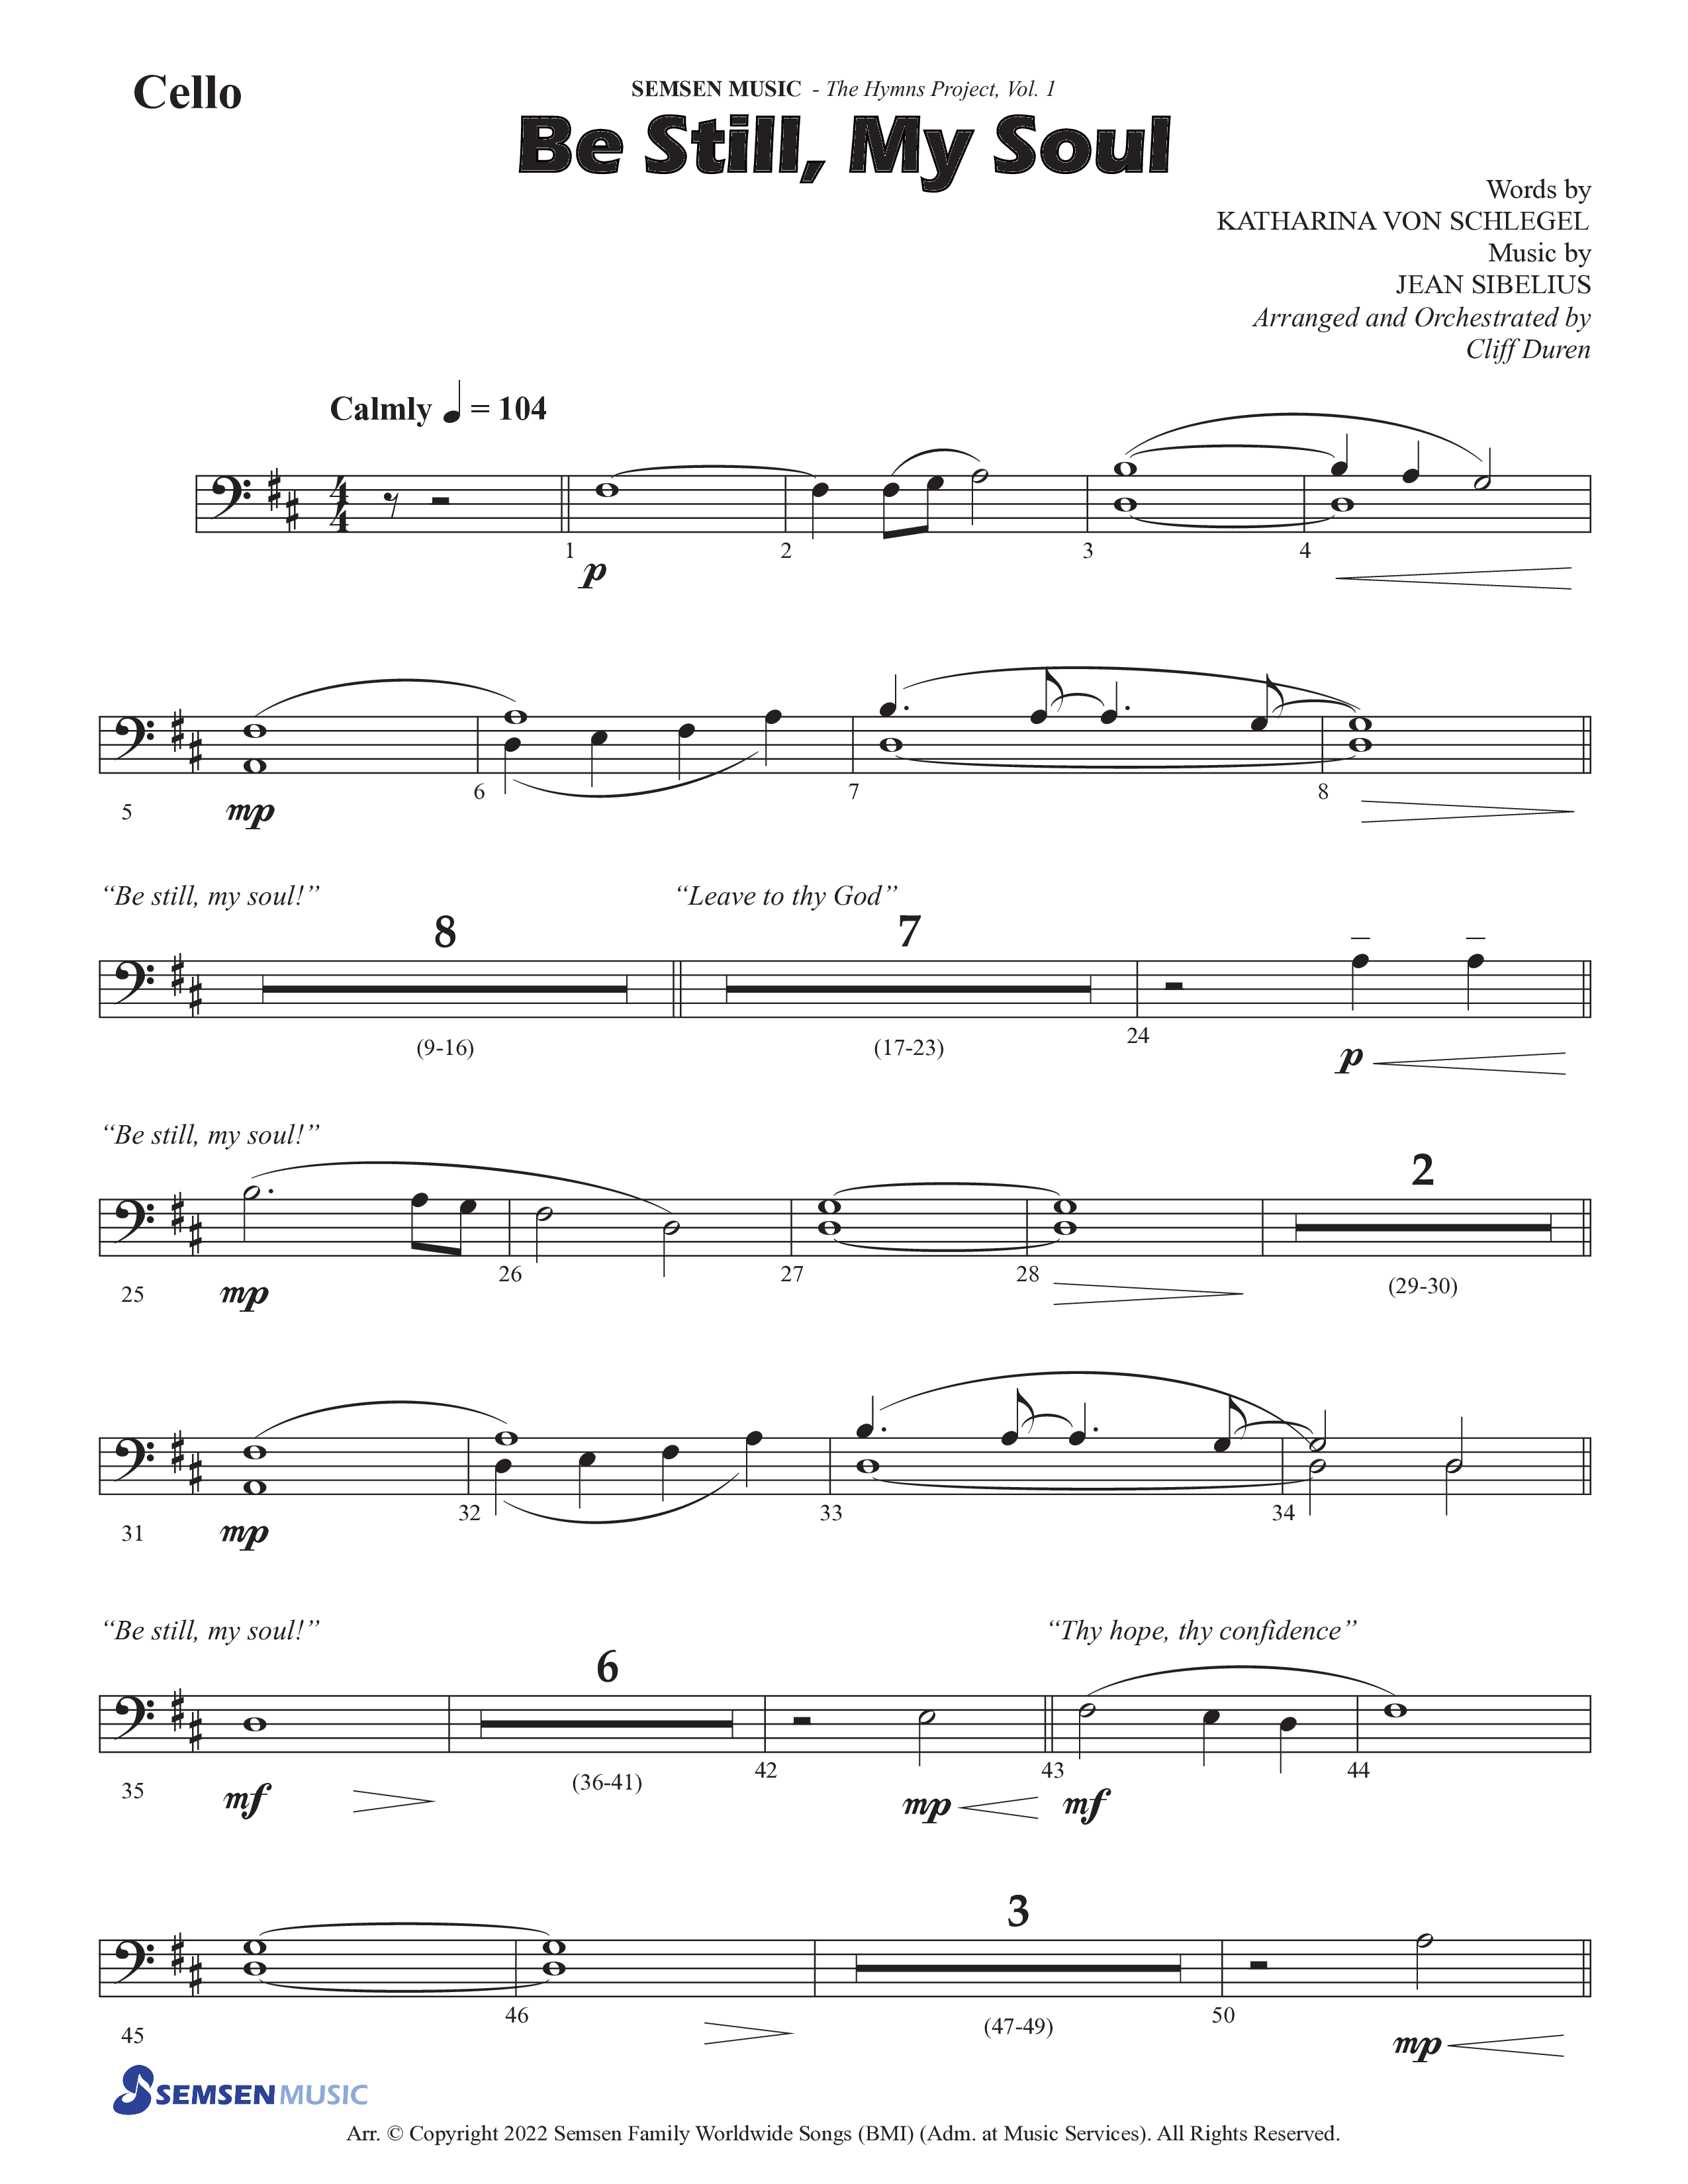 Be Still My Soul (Choral Anthem SATB) Cello (Semsen Music / Arr. Cliff Duren)